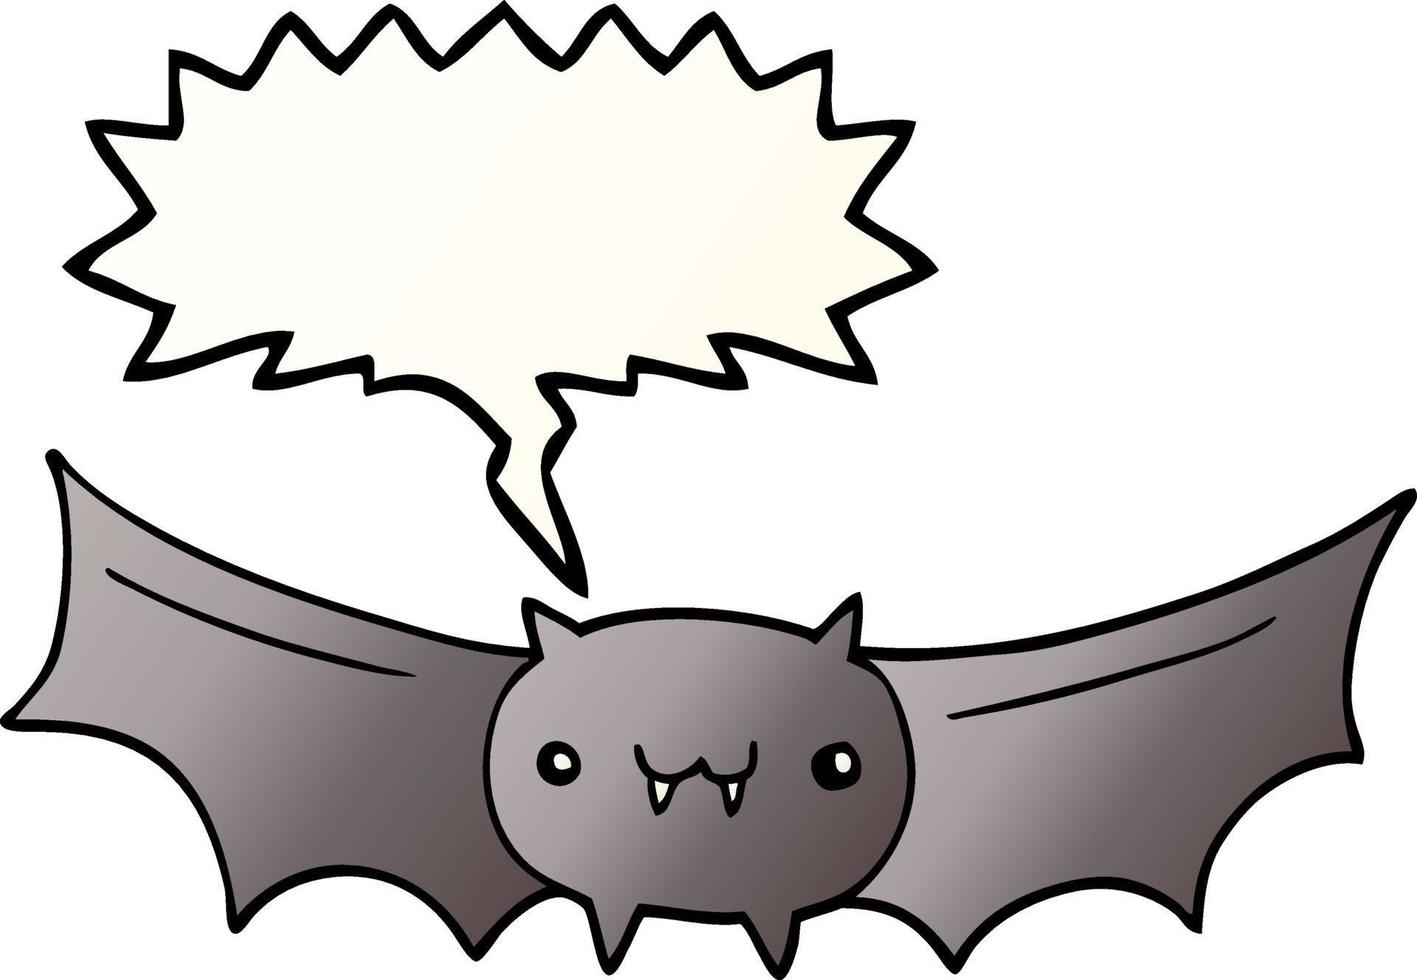 pipistrello vampiro cartone animato e fumetto in stile sfumato liscio vettore